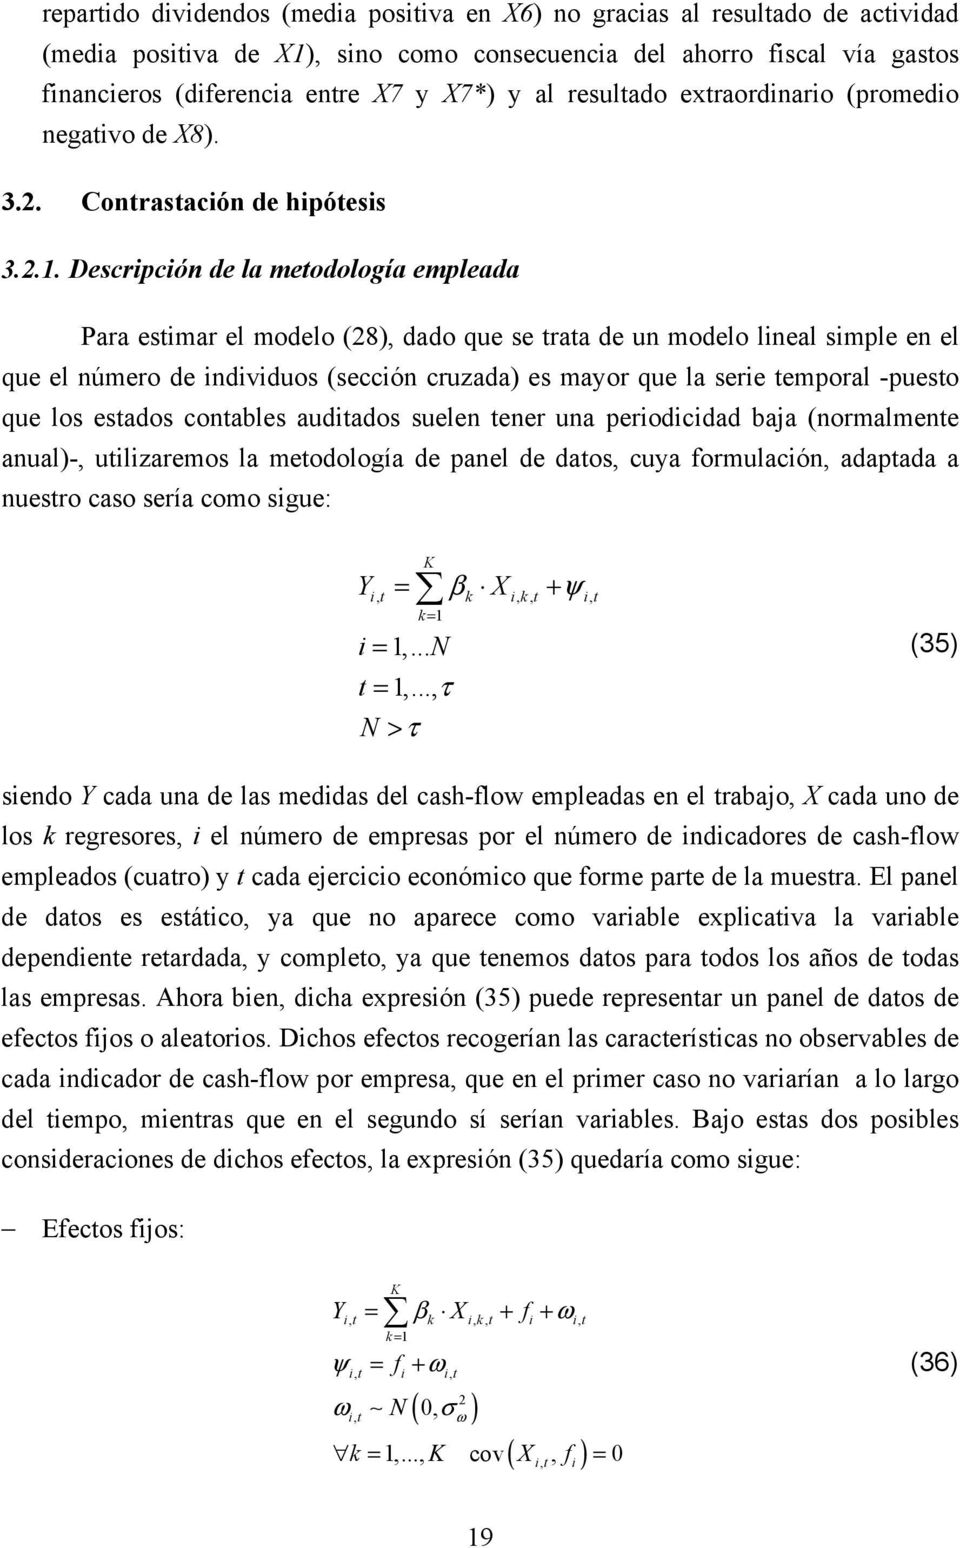 Descripción de la meodología empleada Para esimar el modelo (28), dado que se raa de un modelo lineal simple en el que el número de individuos (sección cruzada) es mayor que la serie emporal -pueso